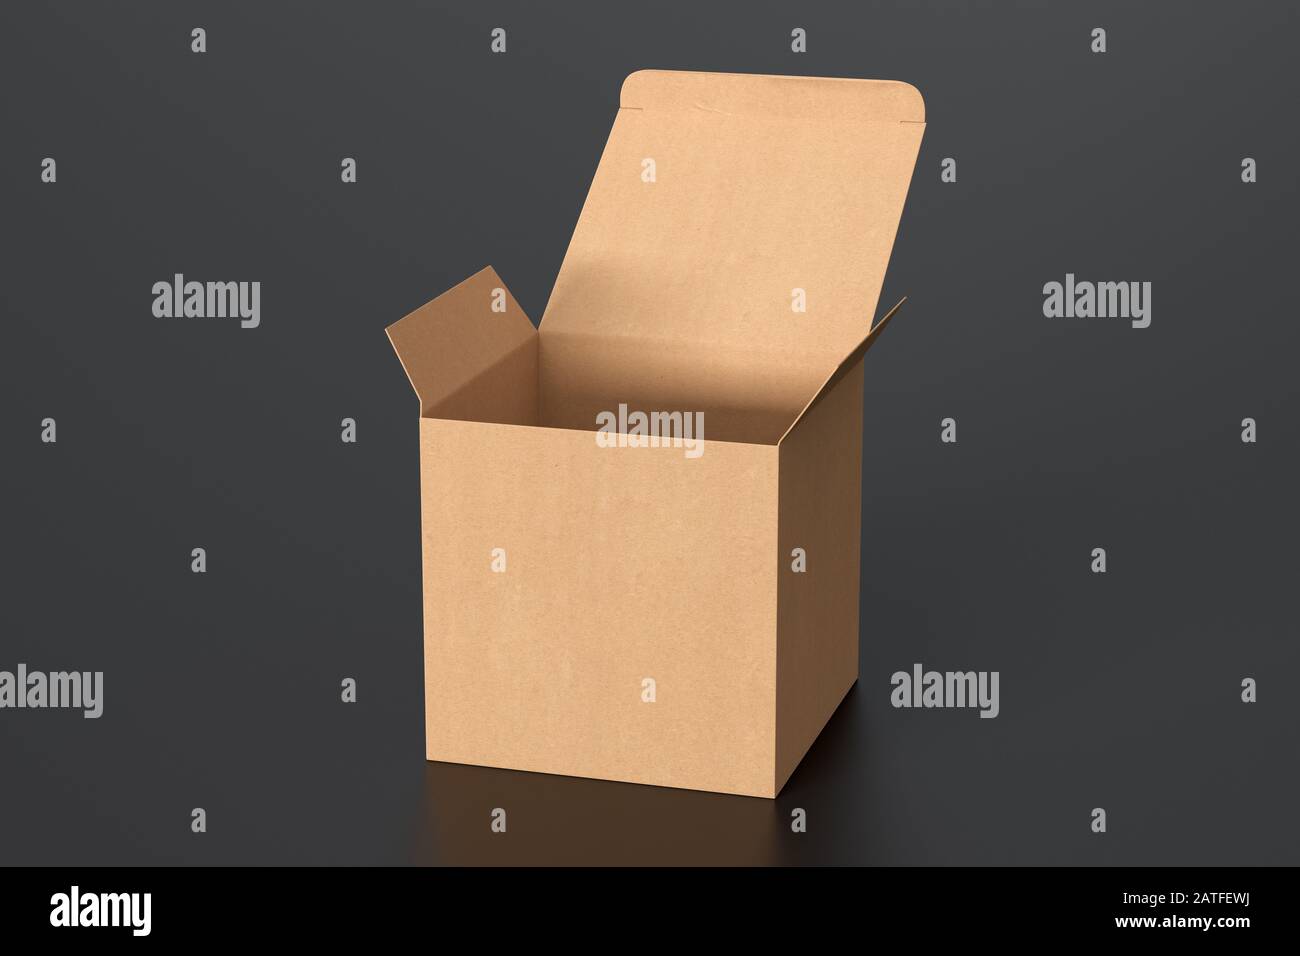 Boîte cadeau cube en carton vierge avec couvercle à rabat ouvert sur fond noir. Chemin de détourage autour de la maquette de boîte Banque D'Images